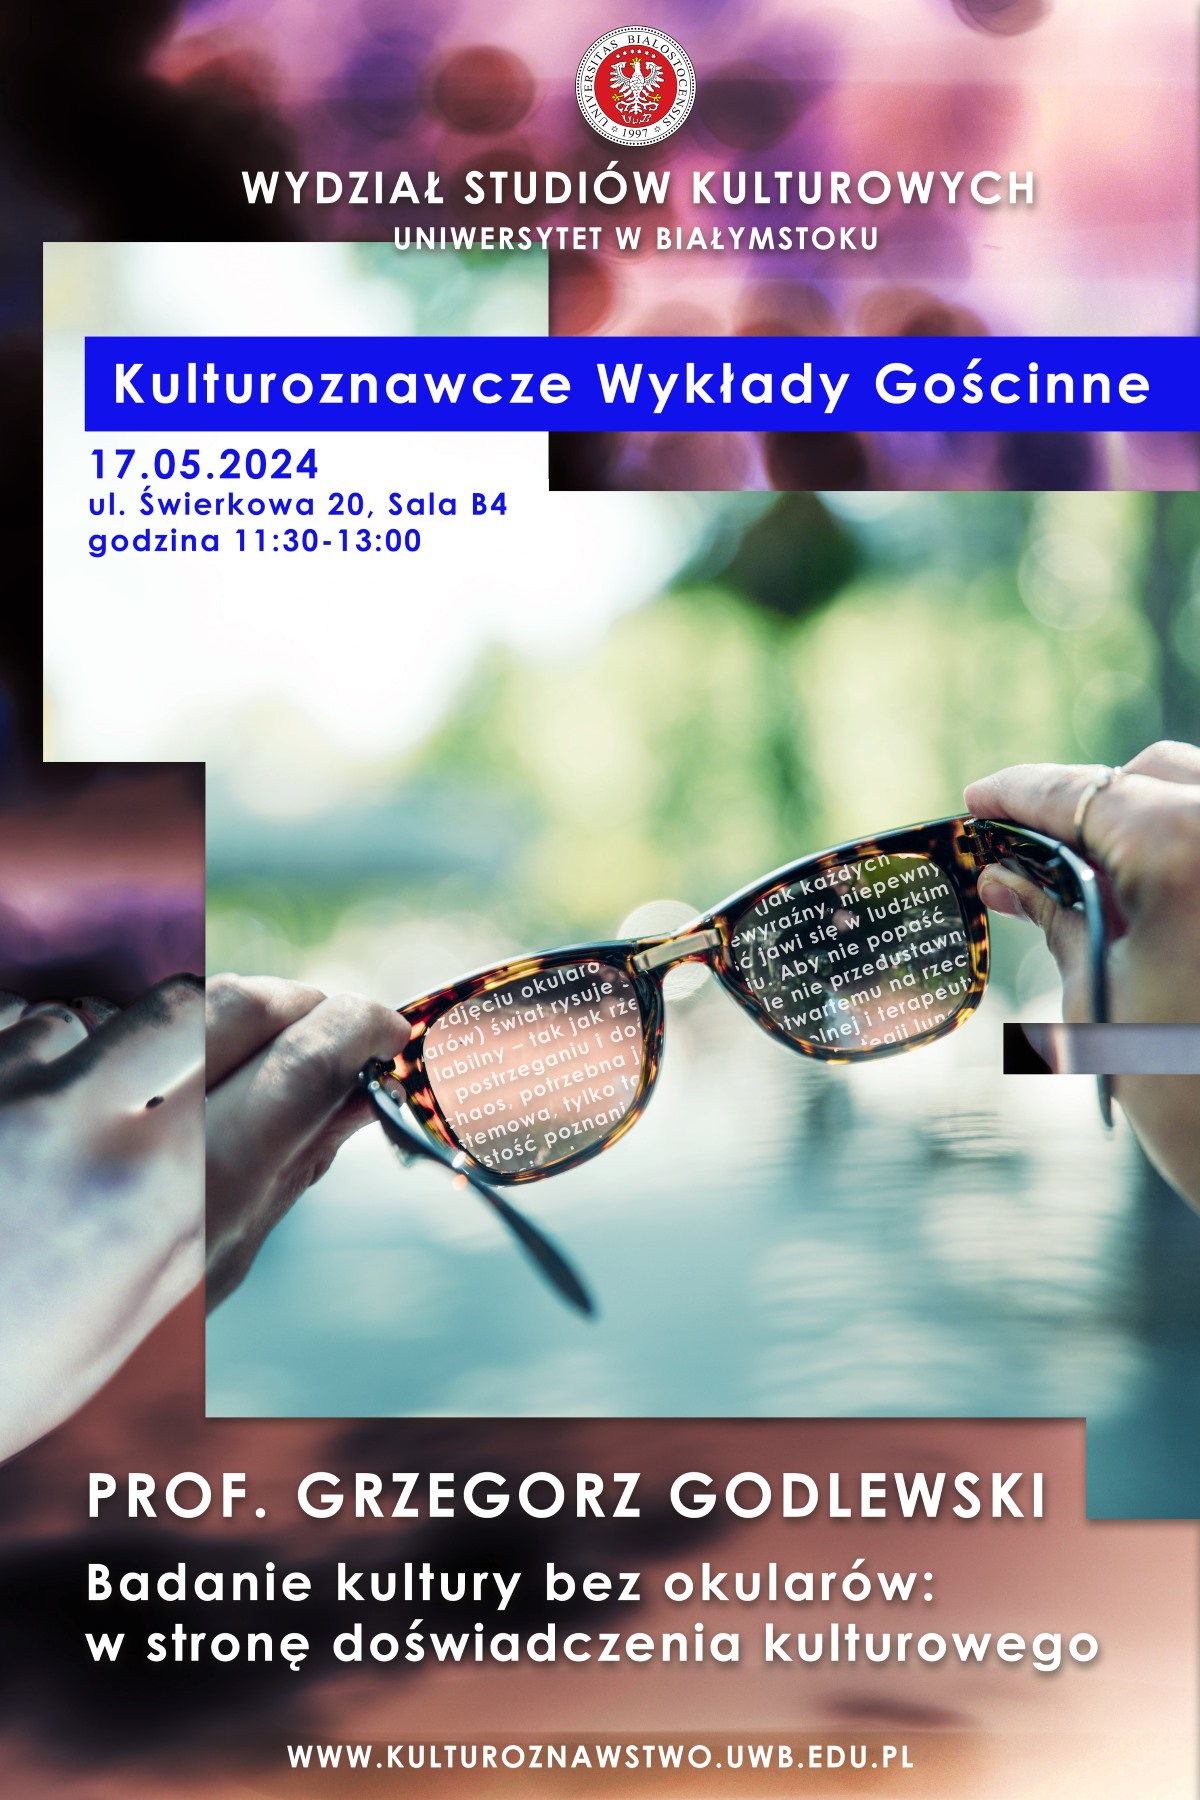 kulturoznawcze_wyklady_godlewski_kolormaly.jpg